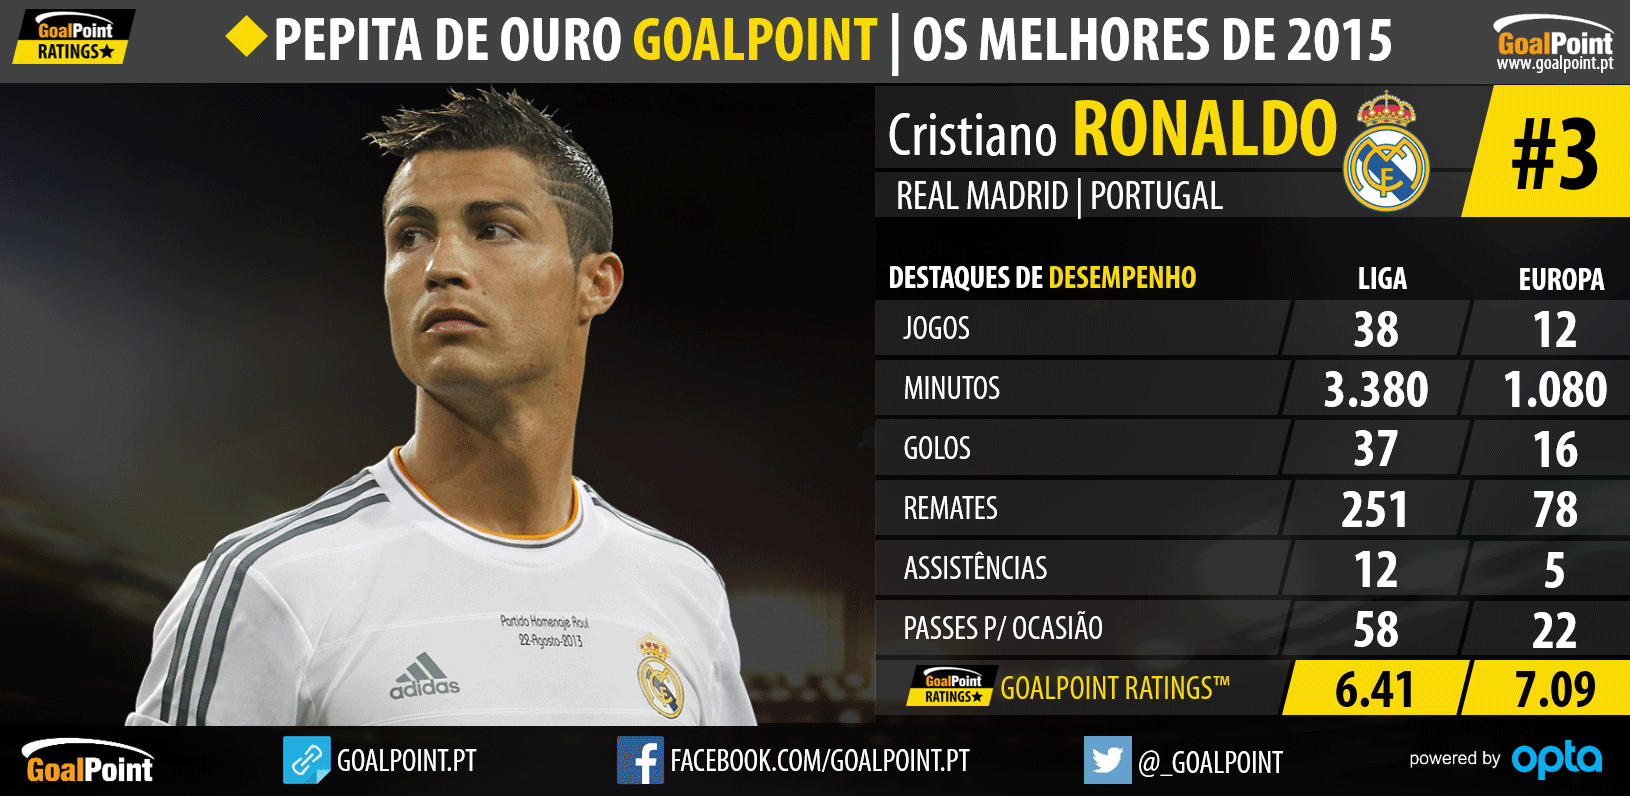 Pepita de Ouro GoalPoint™ 2015: Os melhores do Mundo - Cristiano Ronaldo